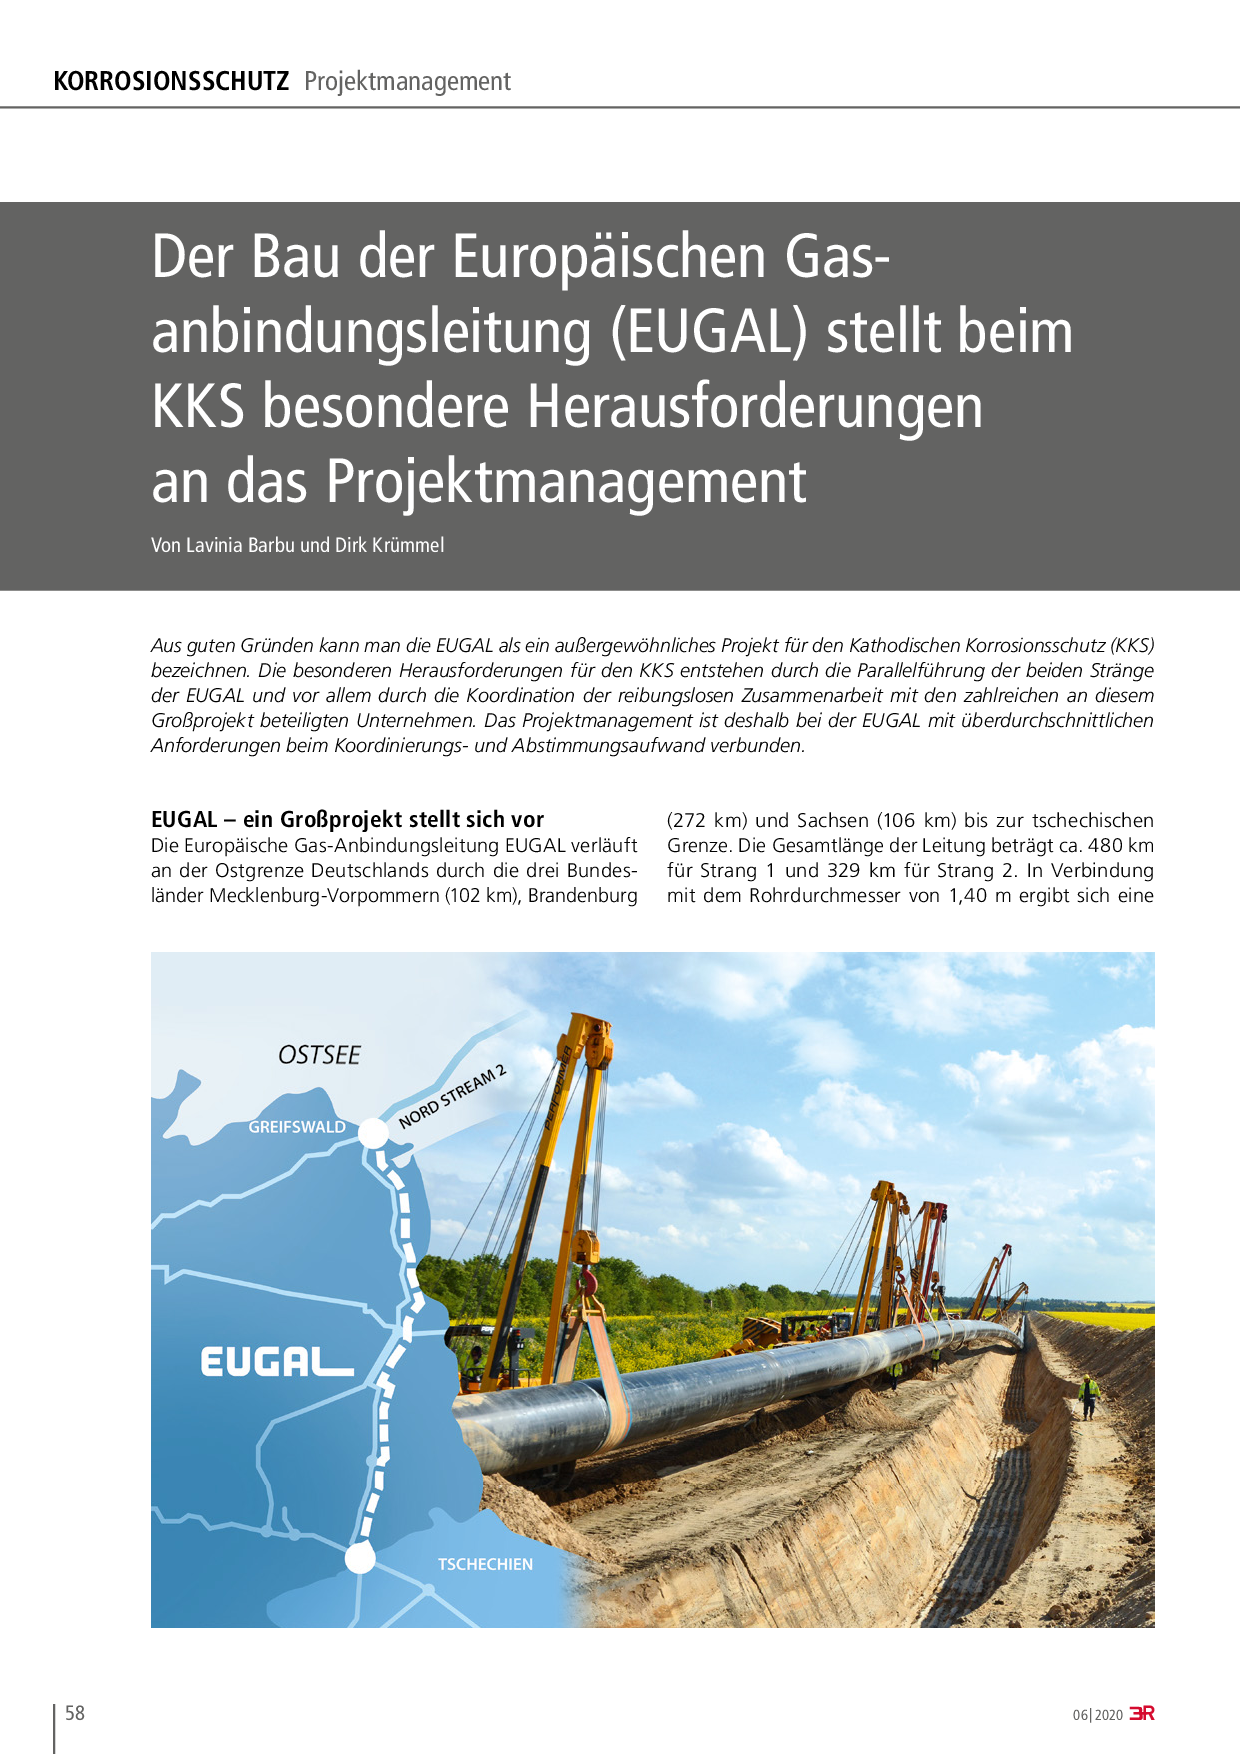 Der Bau der Europäischen Gasanbindungsleitung (EUGAL) stellt beim KKS besondere Herausforderungen an das Projektmanagement